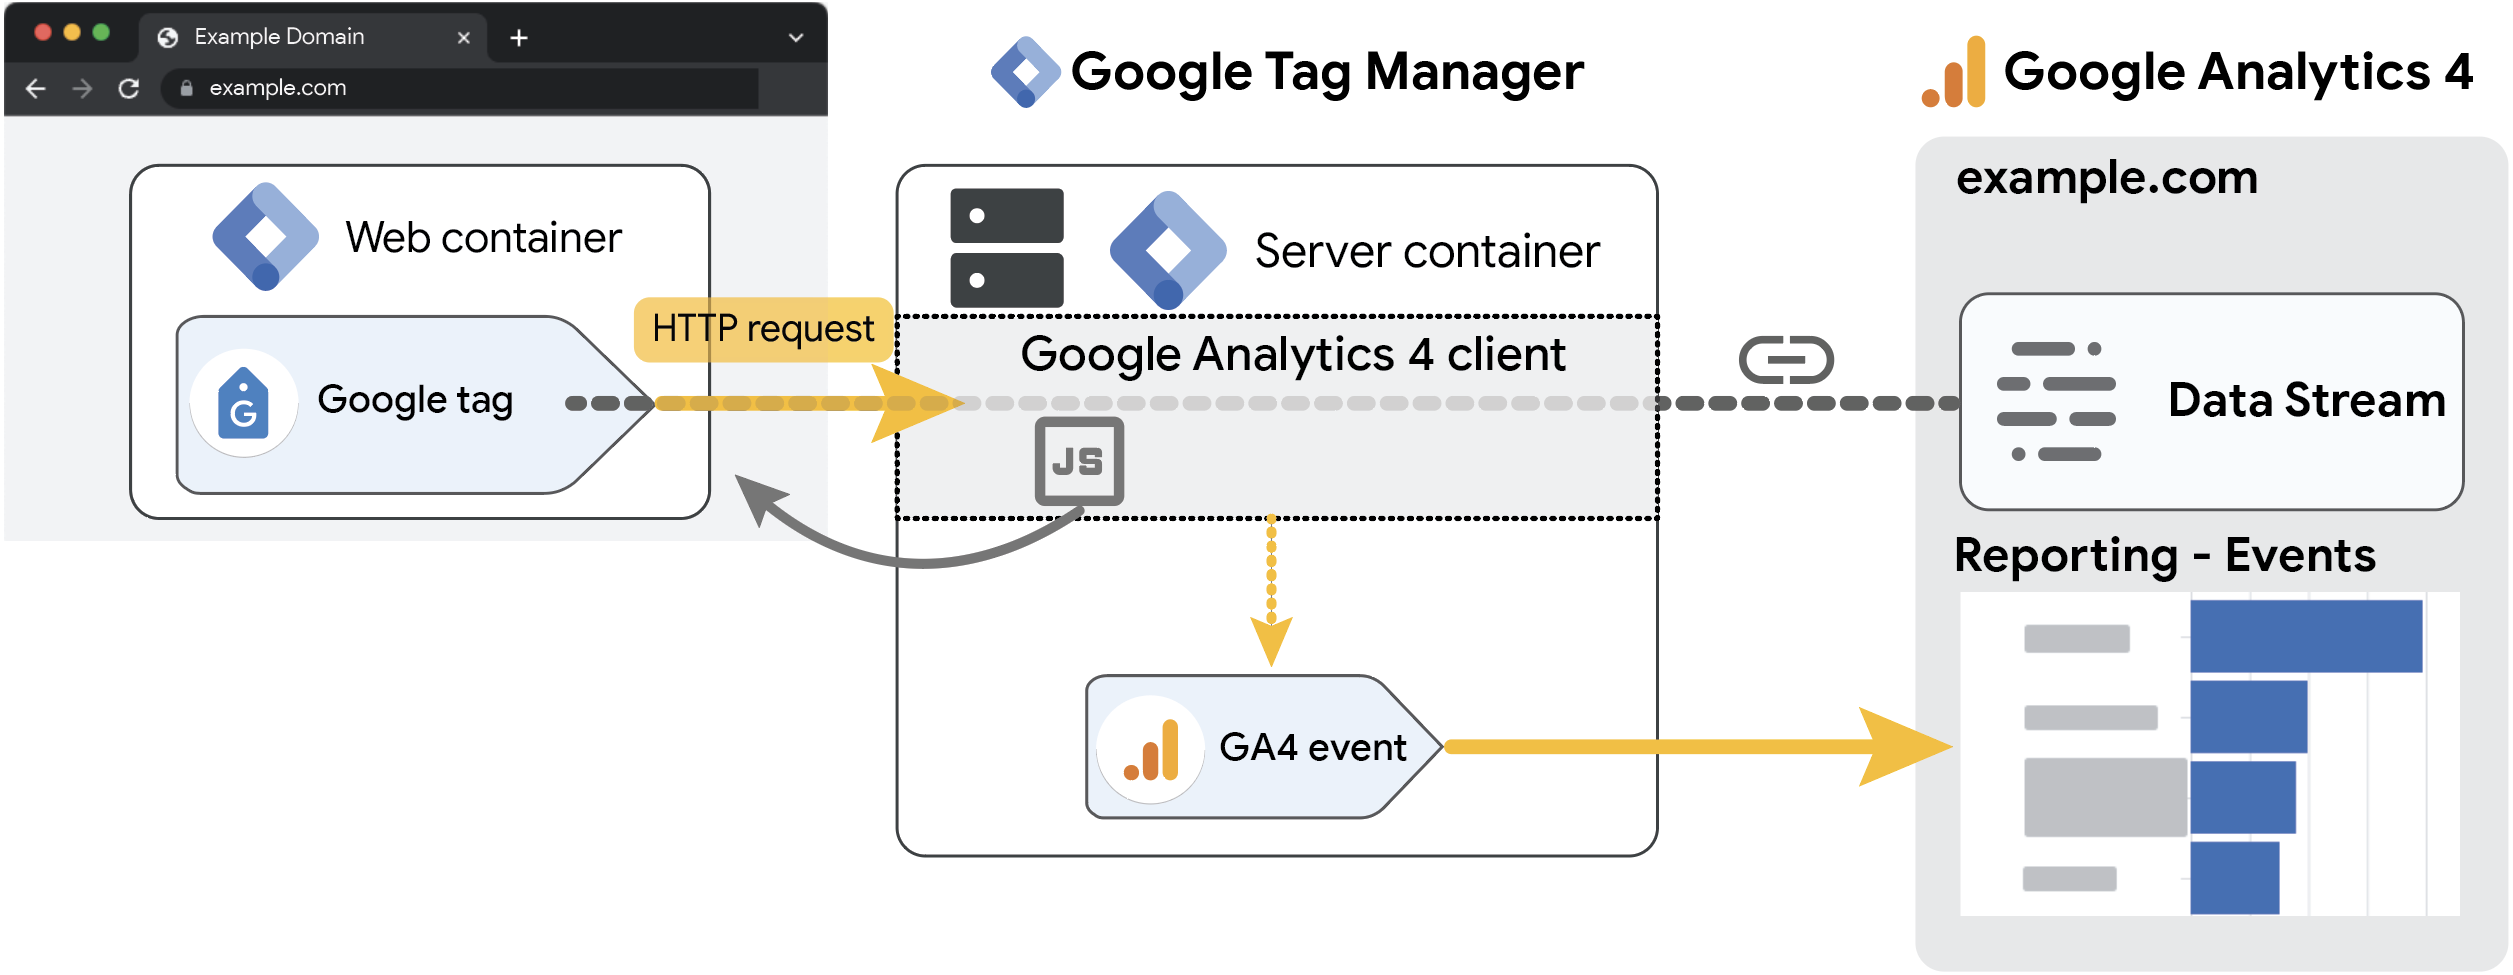 GA4 クライアントが GA4 イベント用のライブラリとして、またプロキシとして機能する様子を示した図。